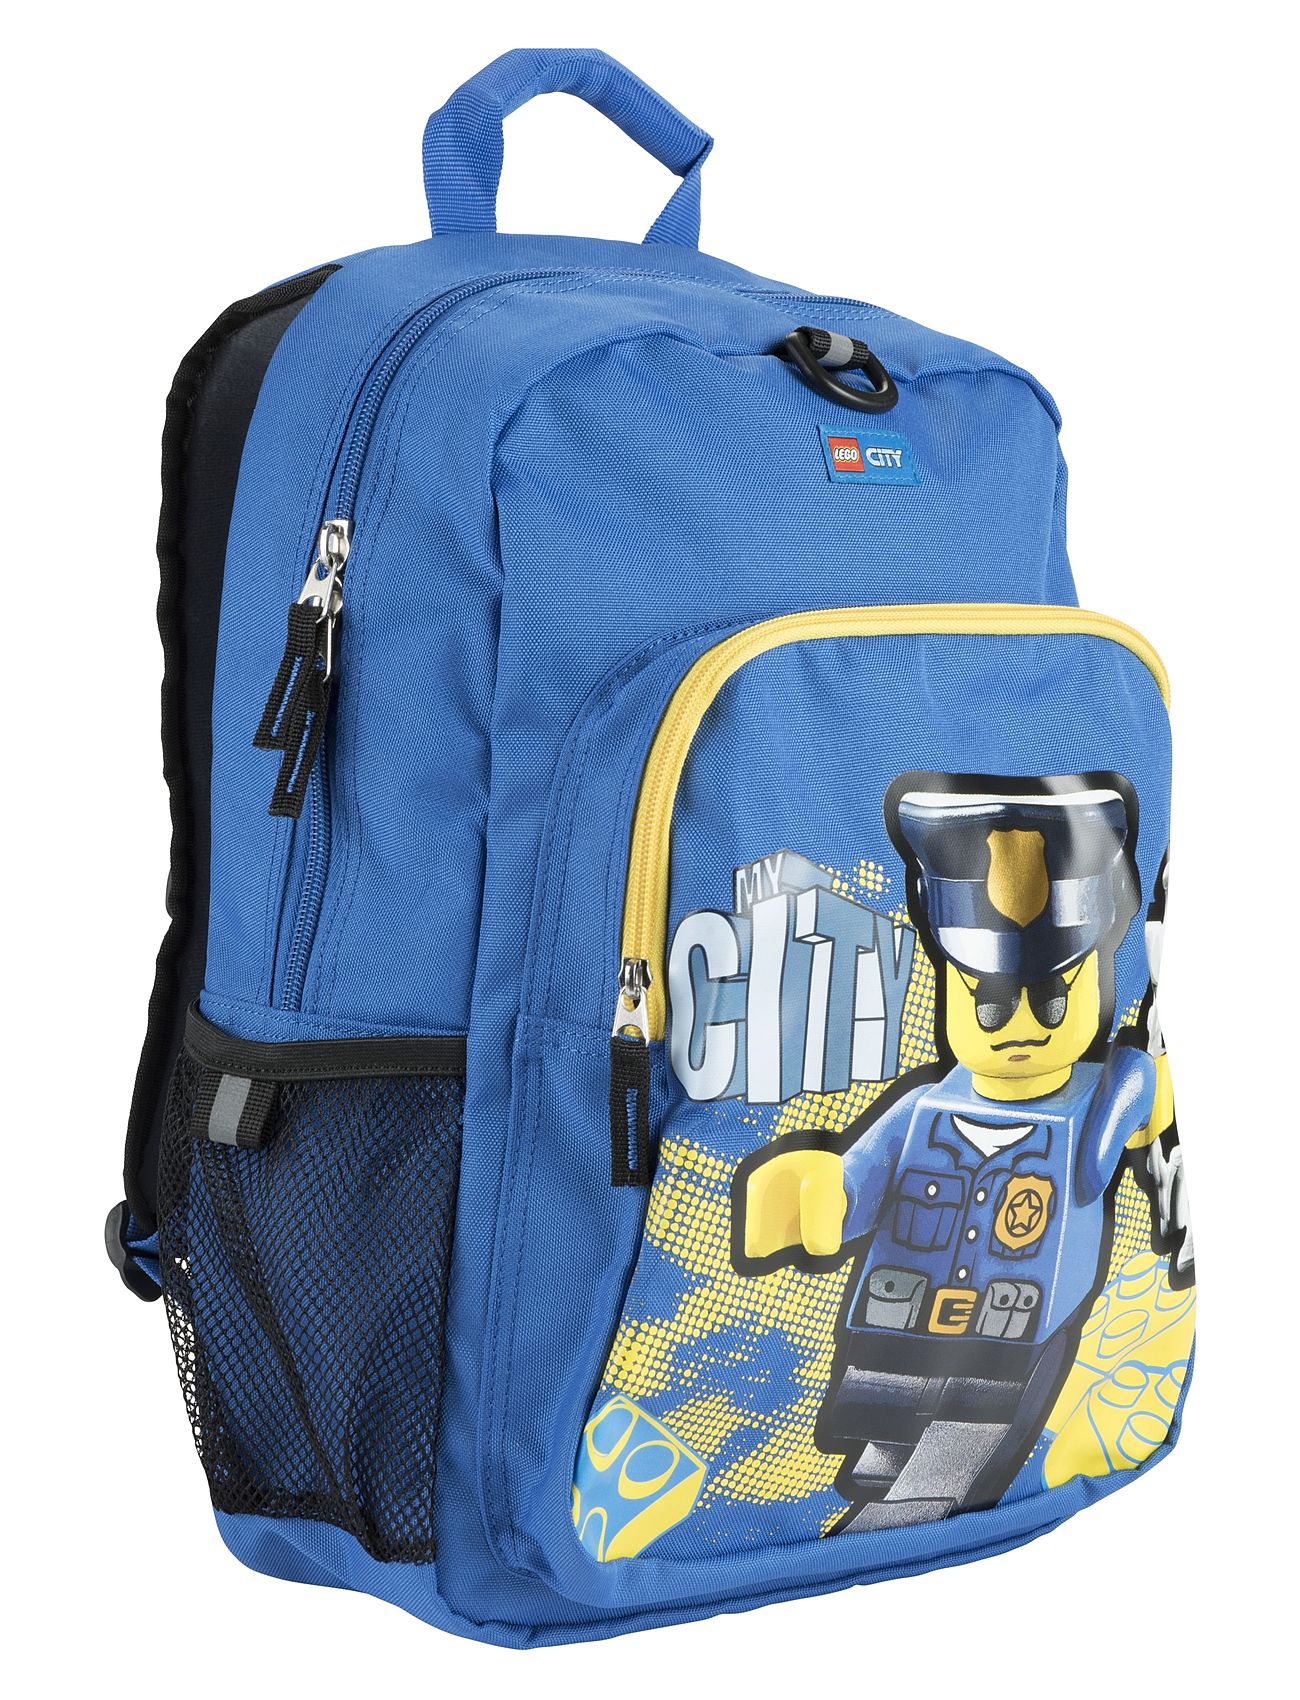 Lego Classic City Police Backpack Ryggsäck Väska Blue LEGO